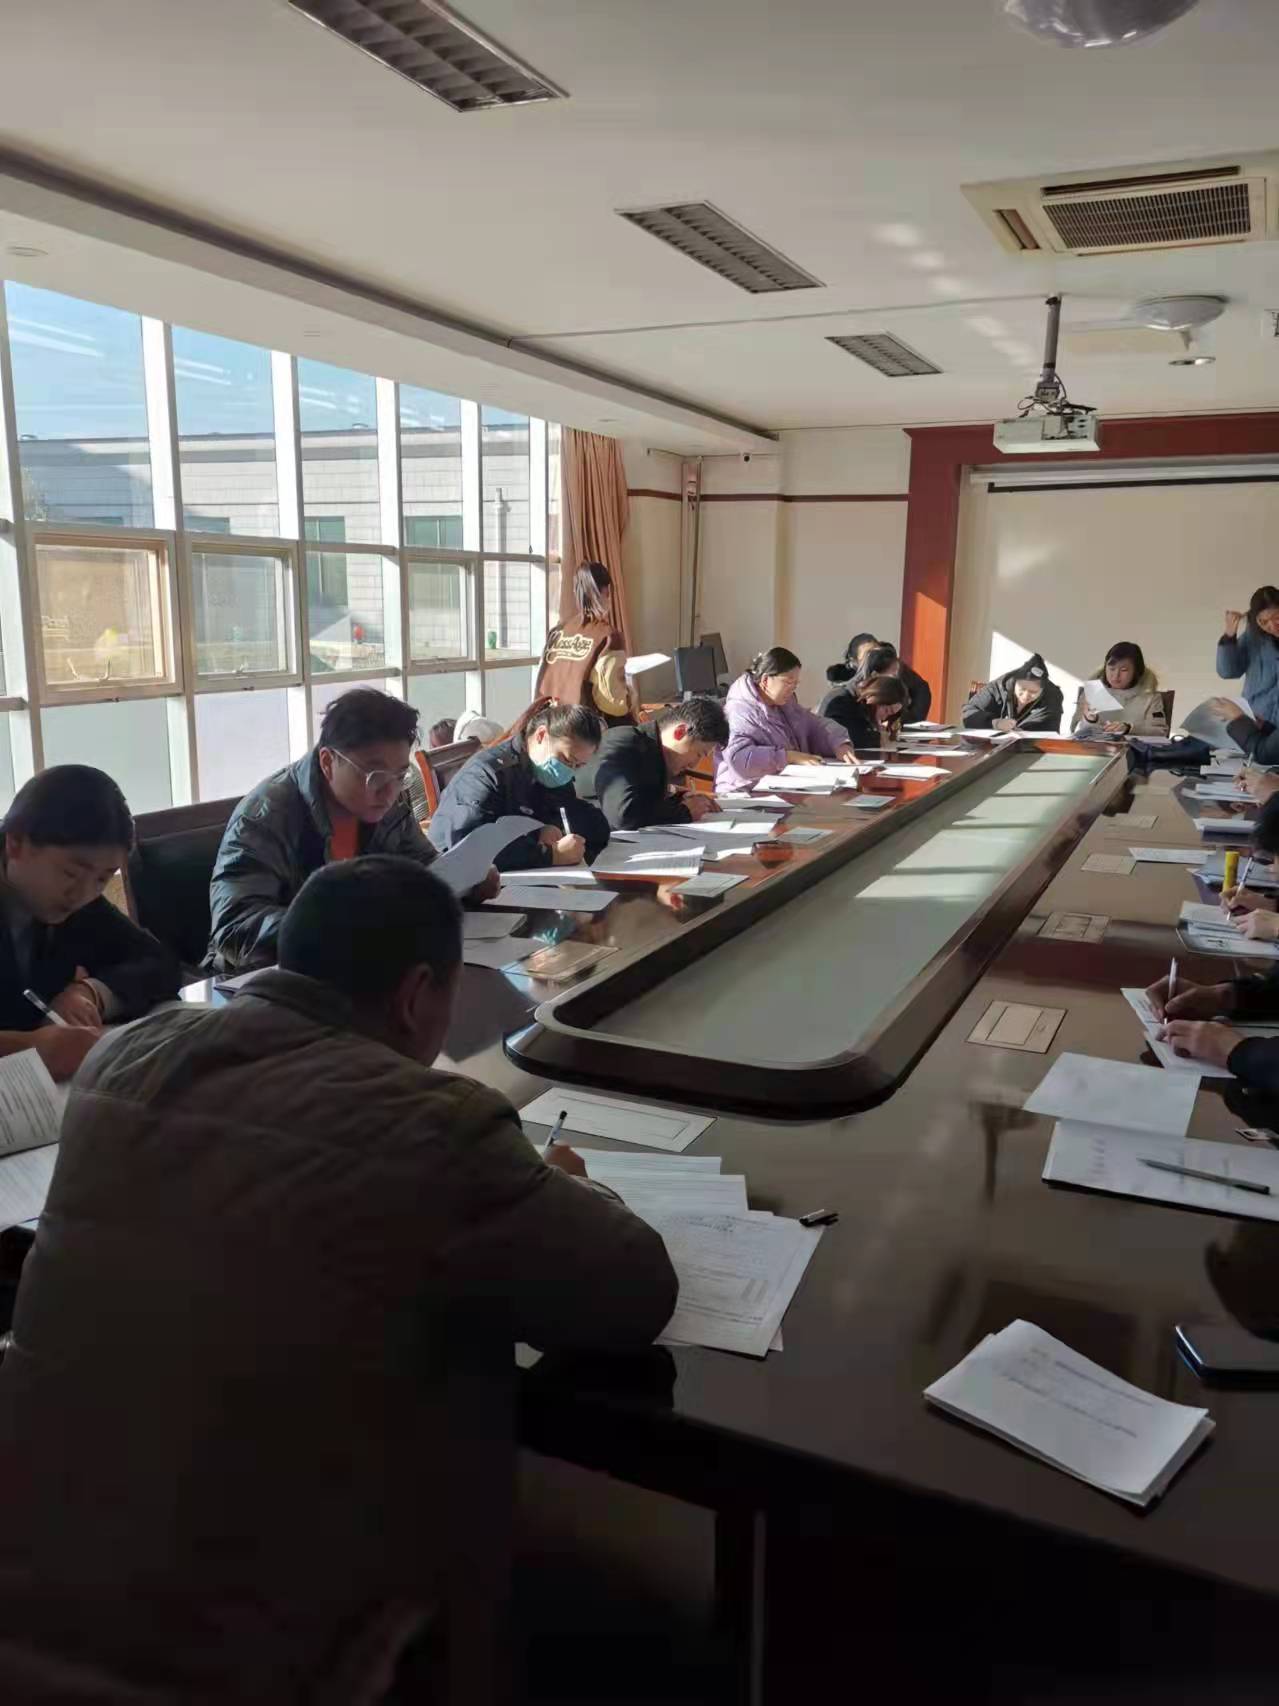 济南市钢城区人民法院签订劳动合同现场IMG_5823(20211201-221608).JPG